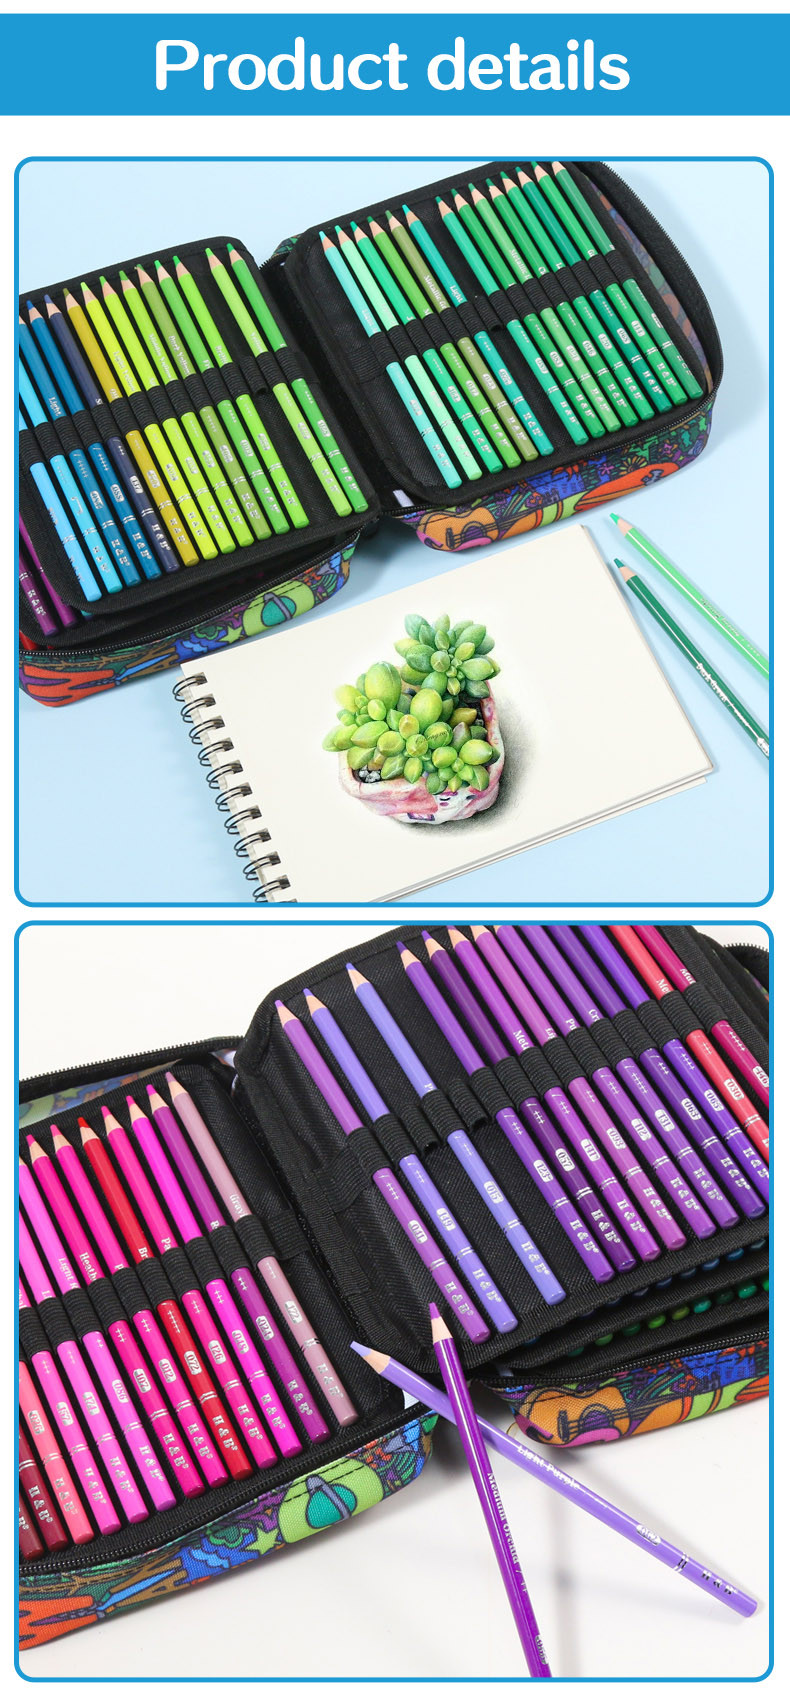 Colored Pencils Art Set